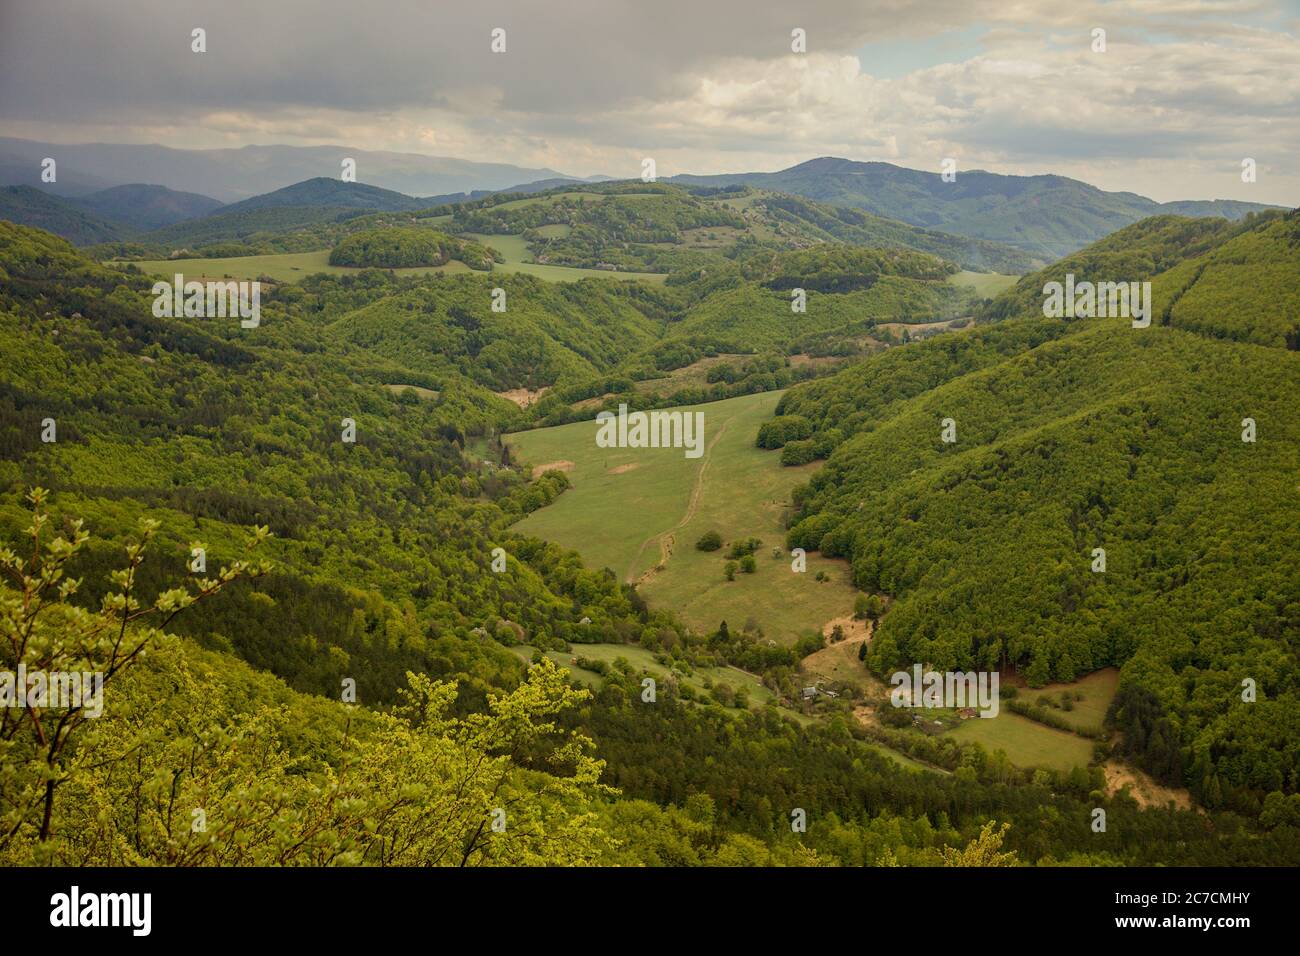 View from black hill on Stredná valley in Strážovské mountains, Slovakia Stock Photo